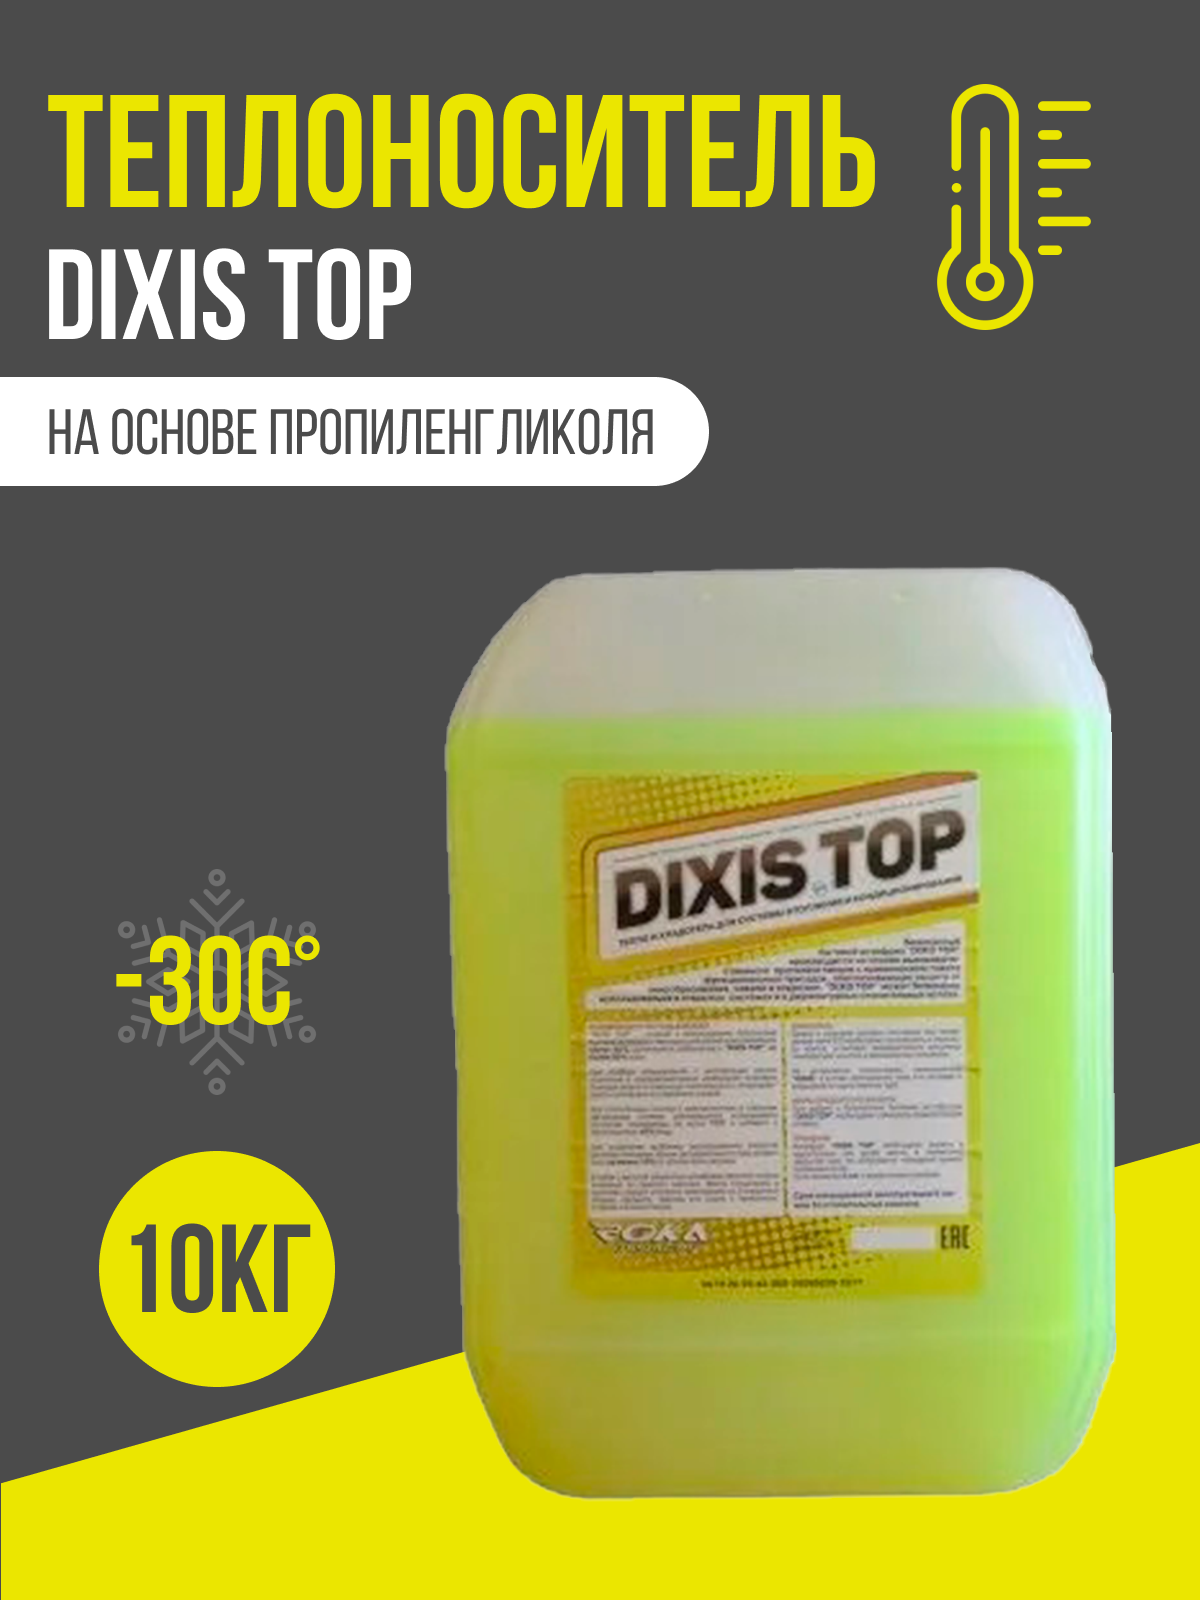 Теплоноситель для системы отопления Dixis Top 30 на основе пропиленгликоля 10 кг